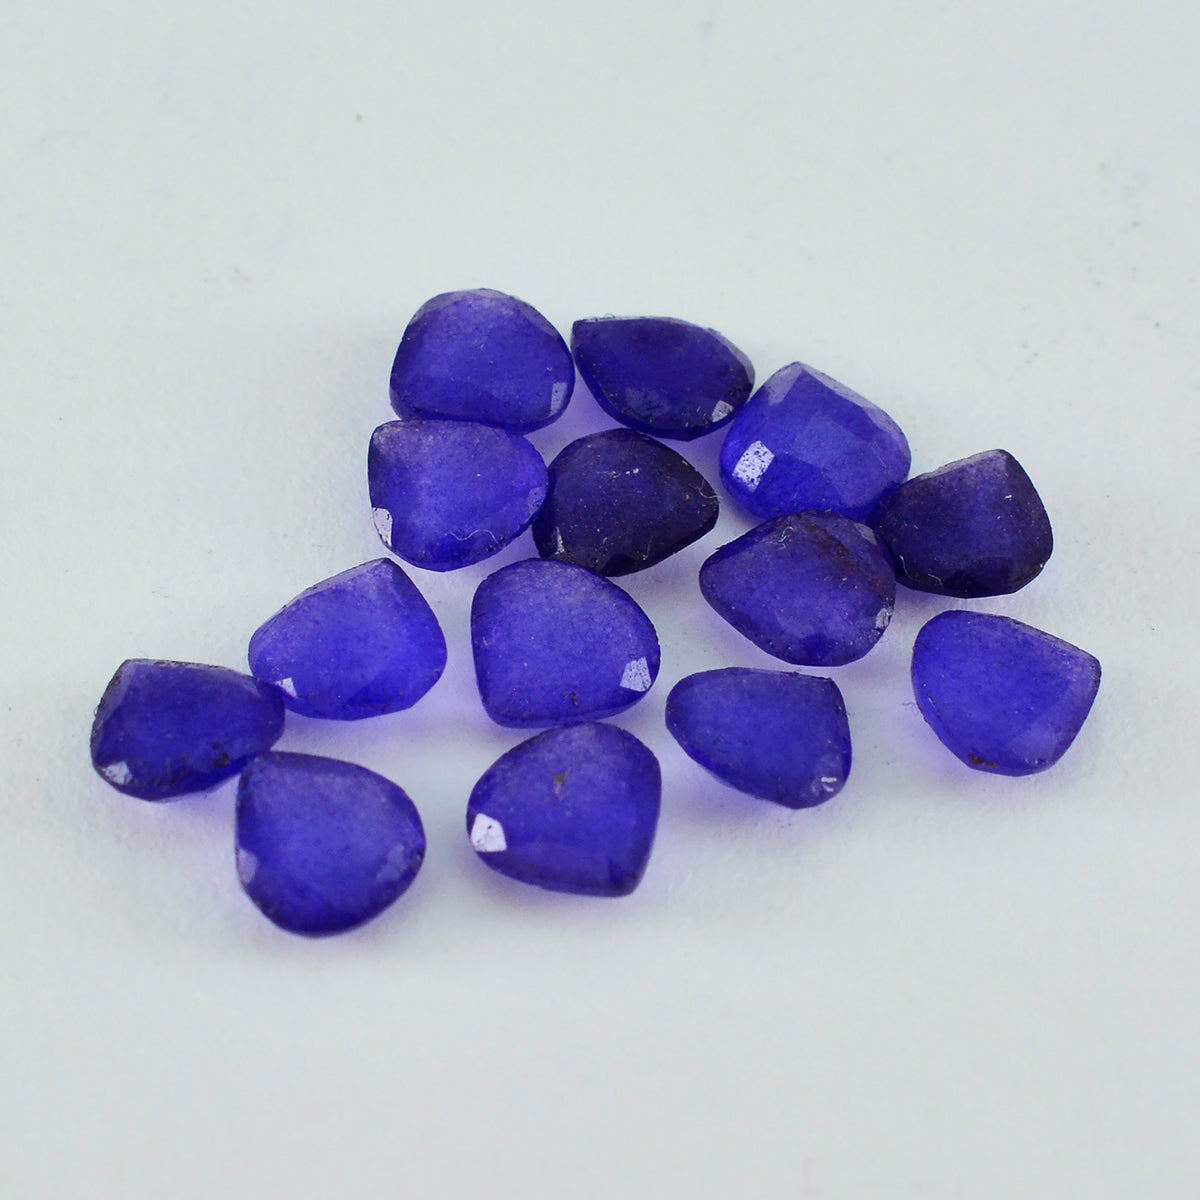 Riyogems 1 pièce de jaspe bleu véritable à facettes 7x7mm en forme de cœur qualité fantastique pierre précieuse en vrac